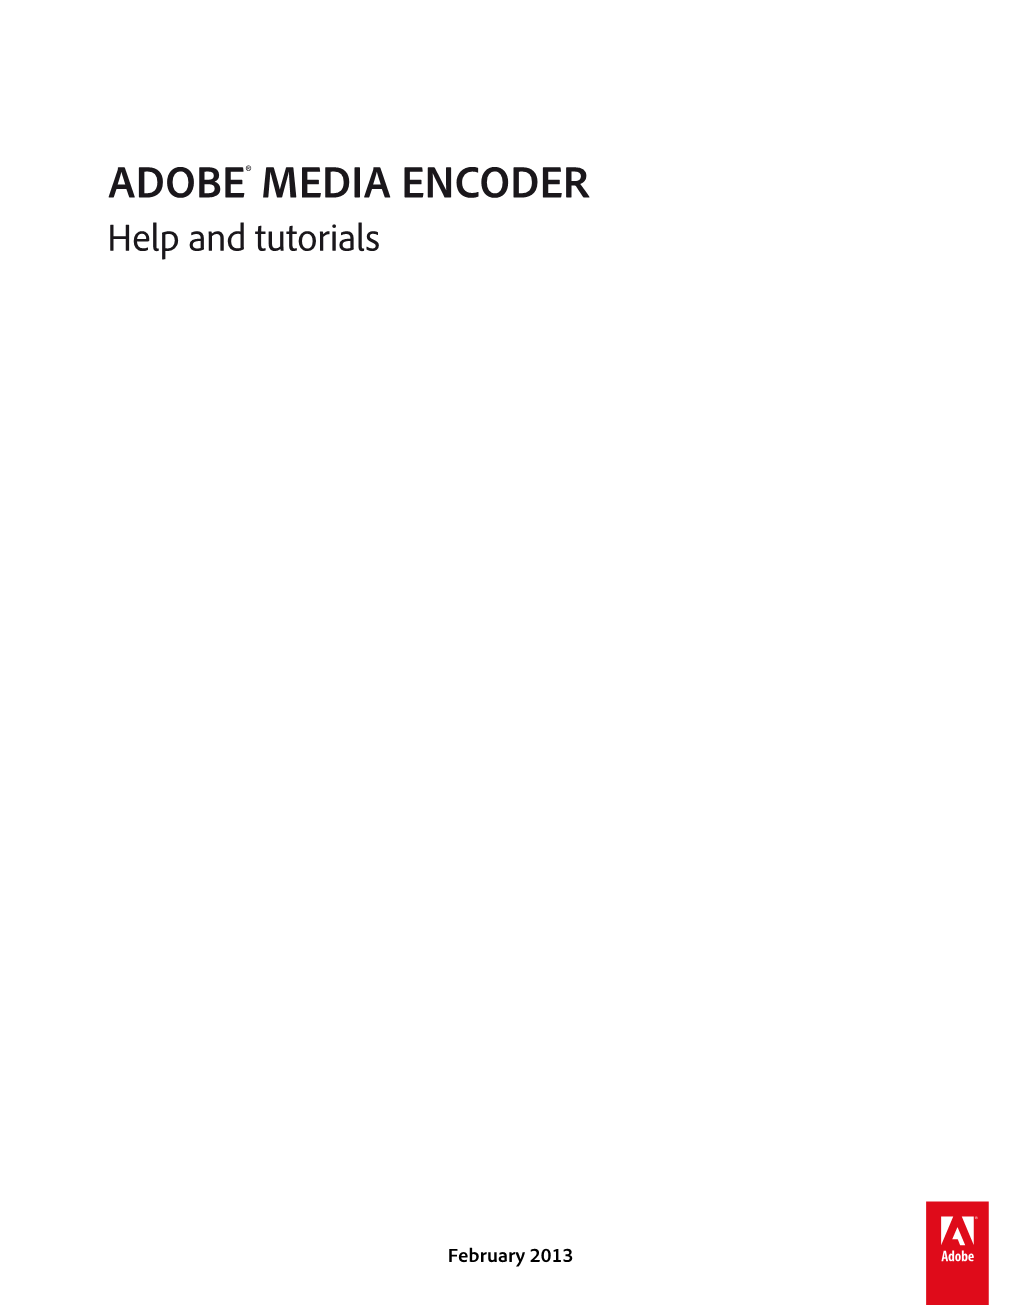 Adobe Media Encoder CS6